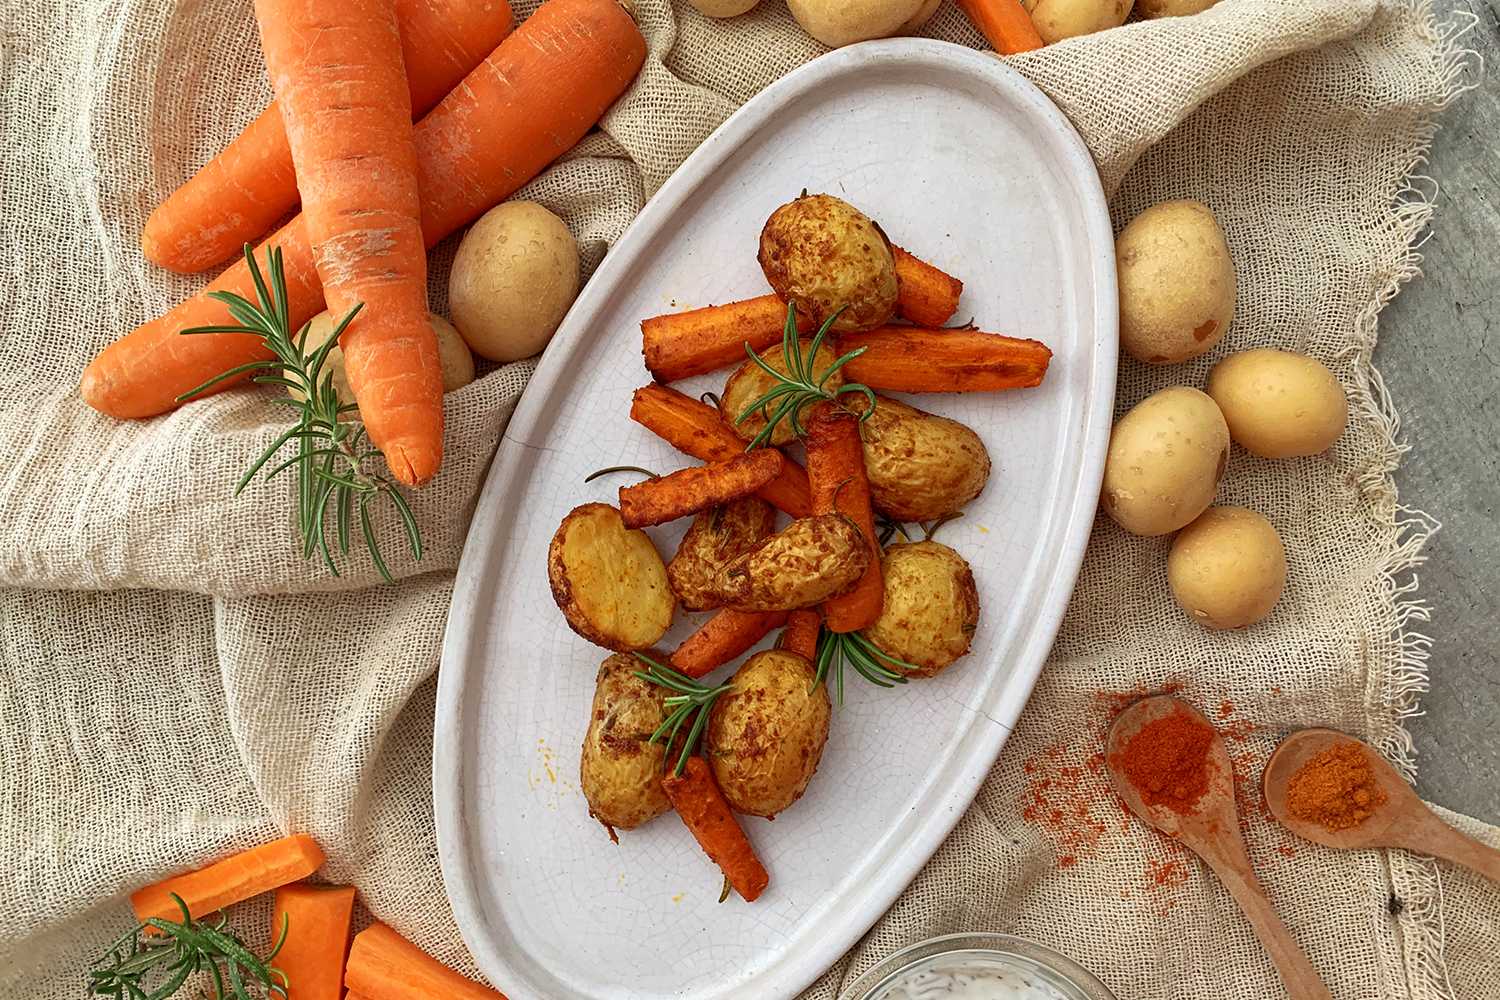 Instant Pot Potatoes and Carrots